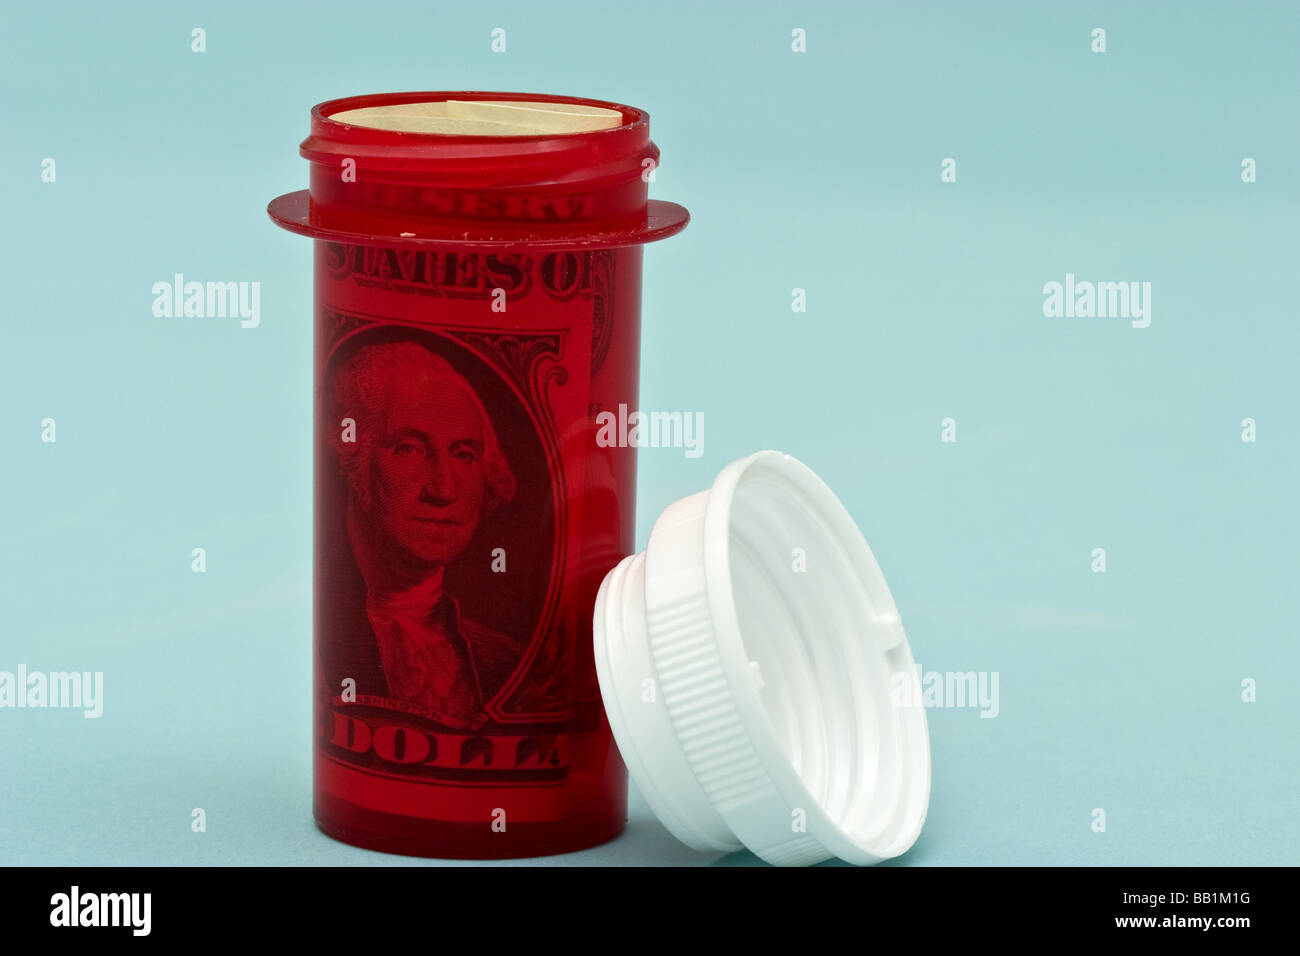 Bouteille en plastique rouge necessaire avec bouchon de sécurité avec un américain one dollar bill montrant le portrait de George Washington Banque D'Images